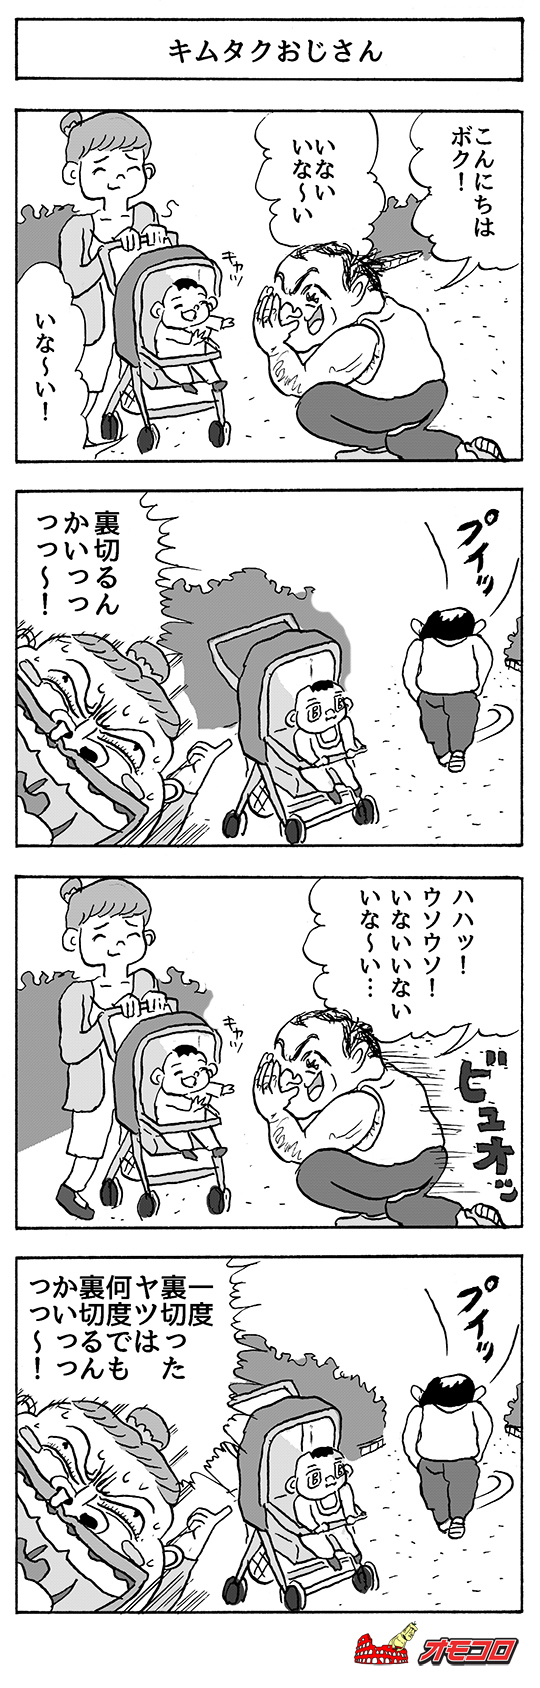 【4コマ漫画】キムタクおじさん